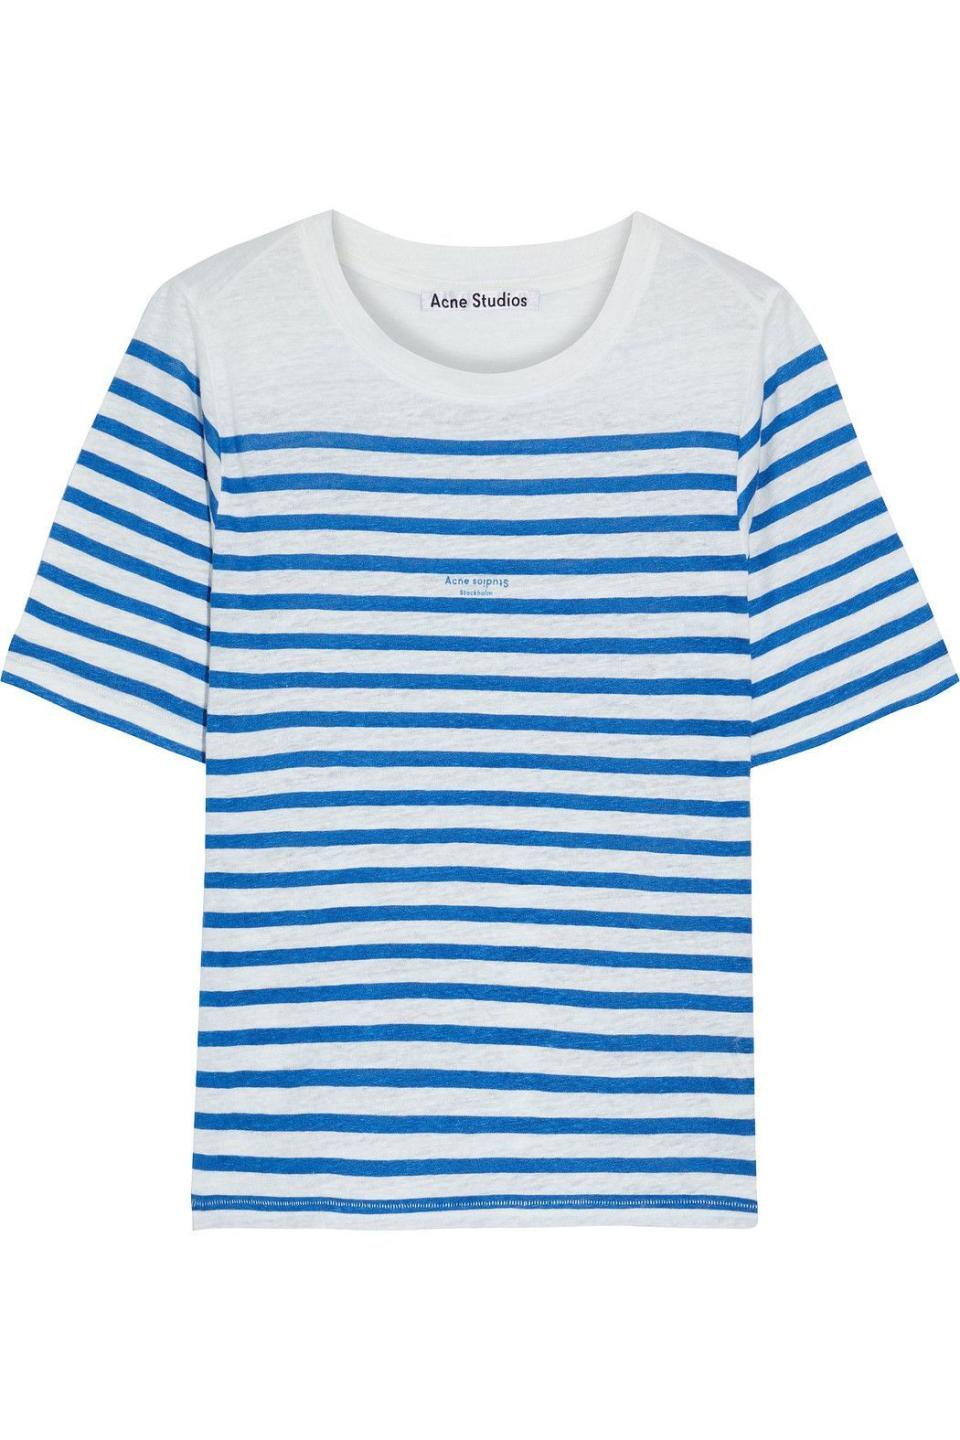 11) Megalin Striped T-shirt